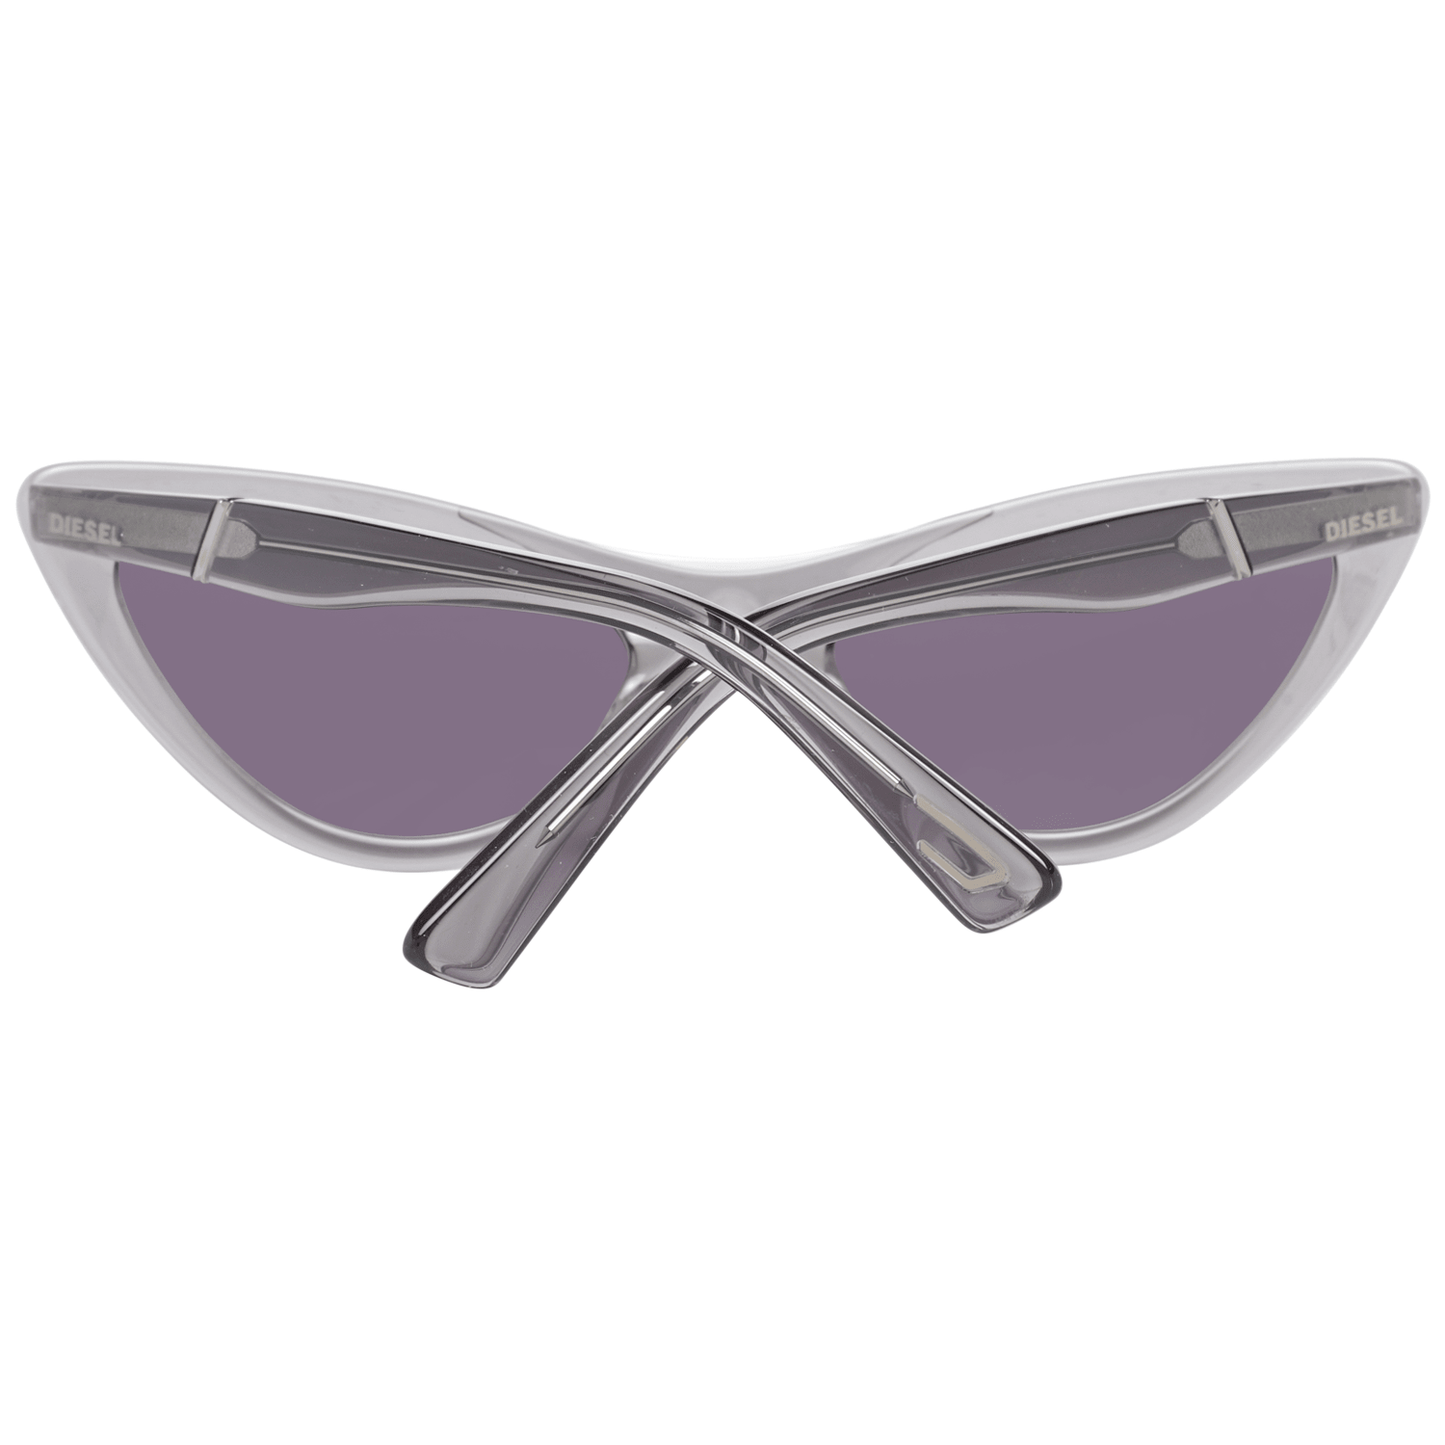 Gray Women Sunglasses